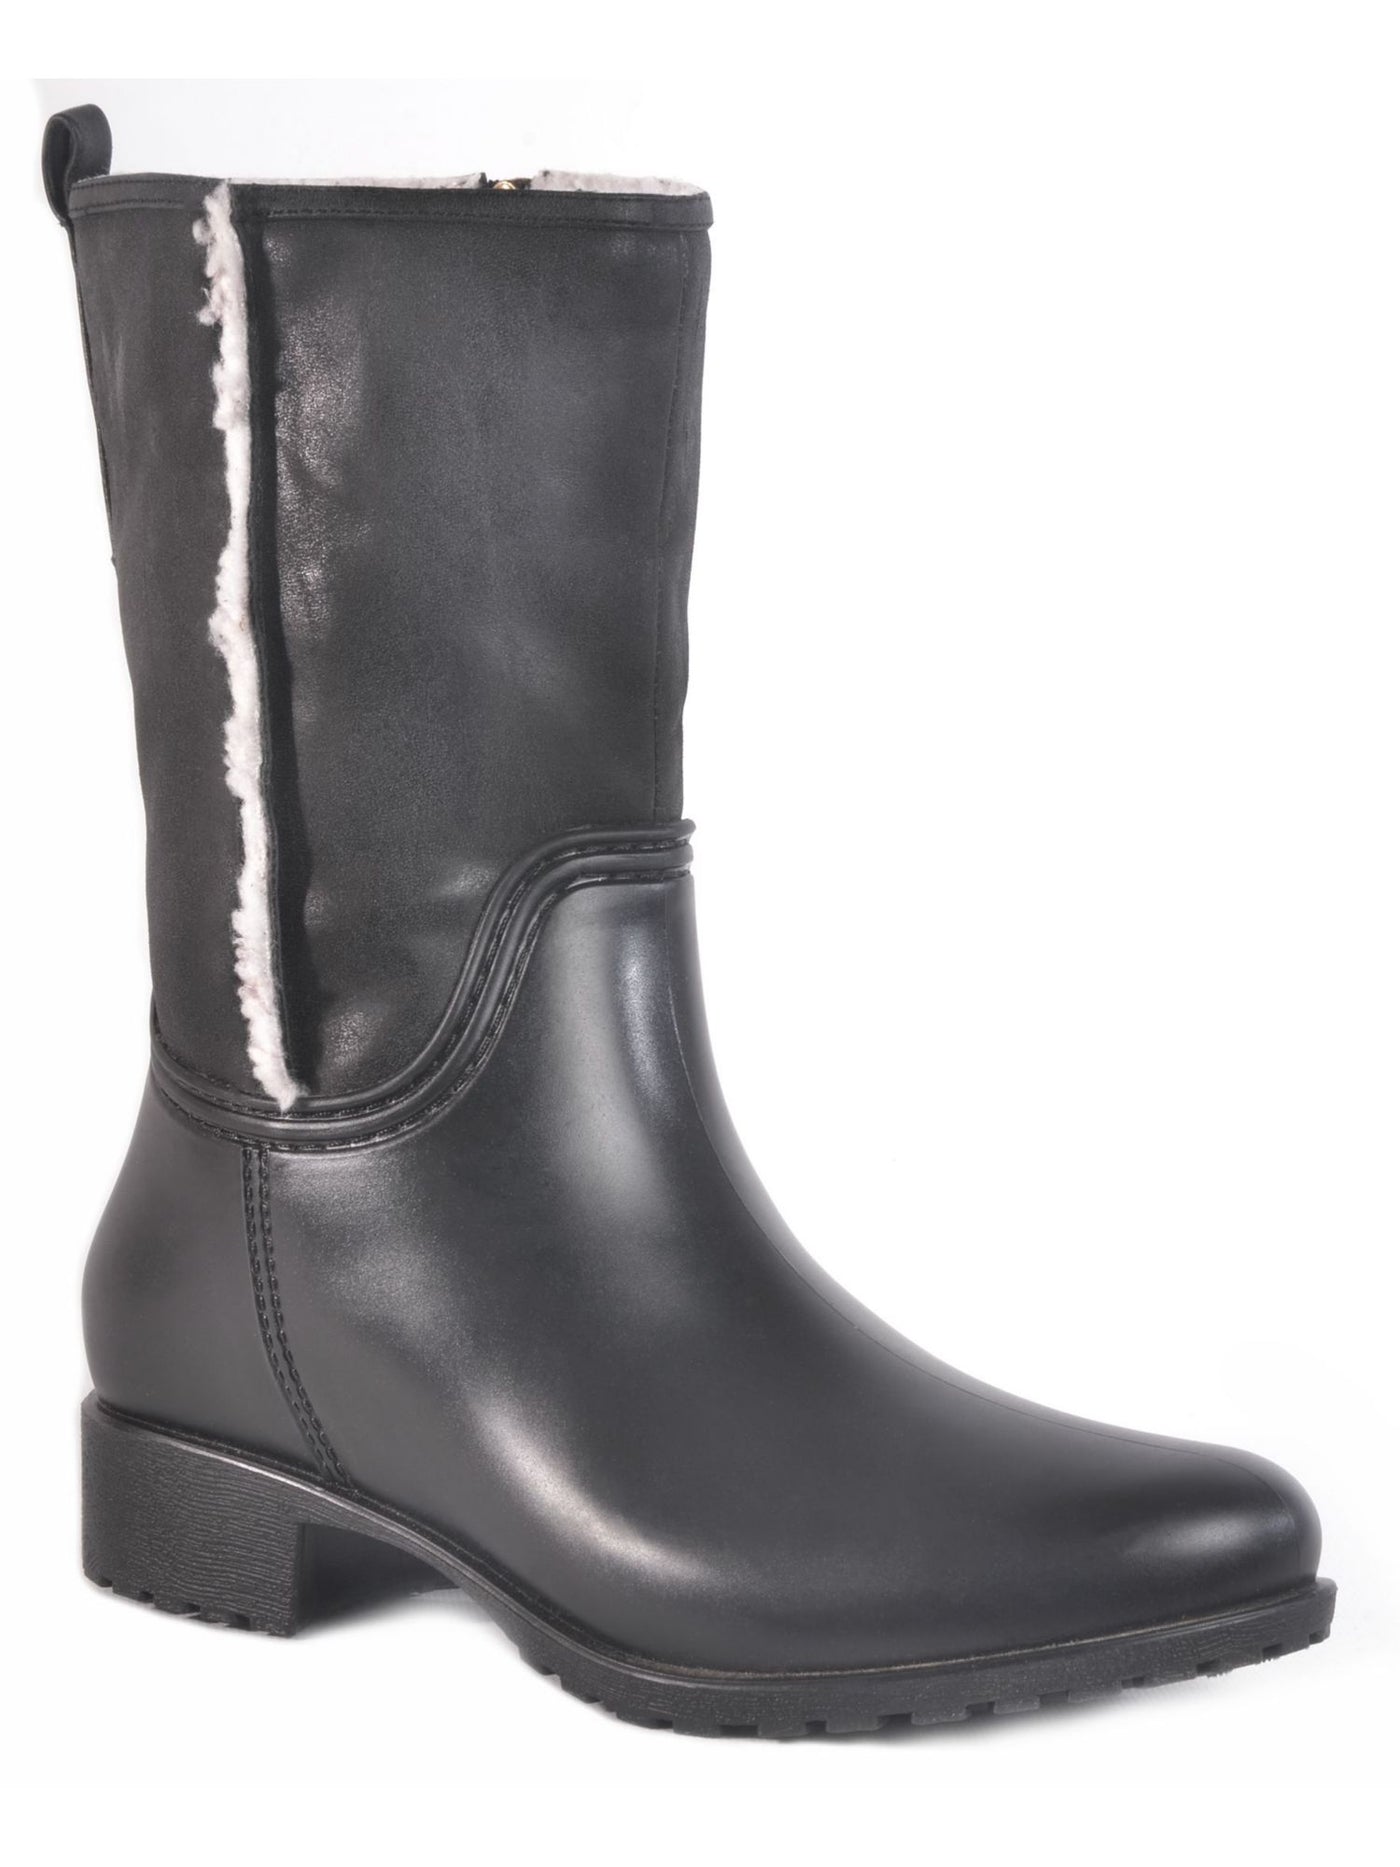 DAV Womens Black Moisture Wicking Cushioned Water Resistant Cheyenne Round Toe Block Heel Zip-Up Rain Boots 9